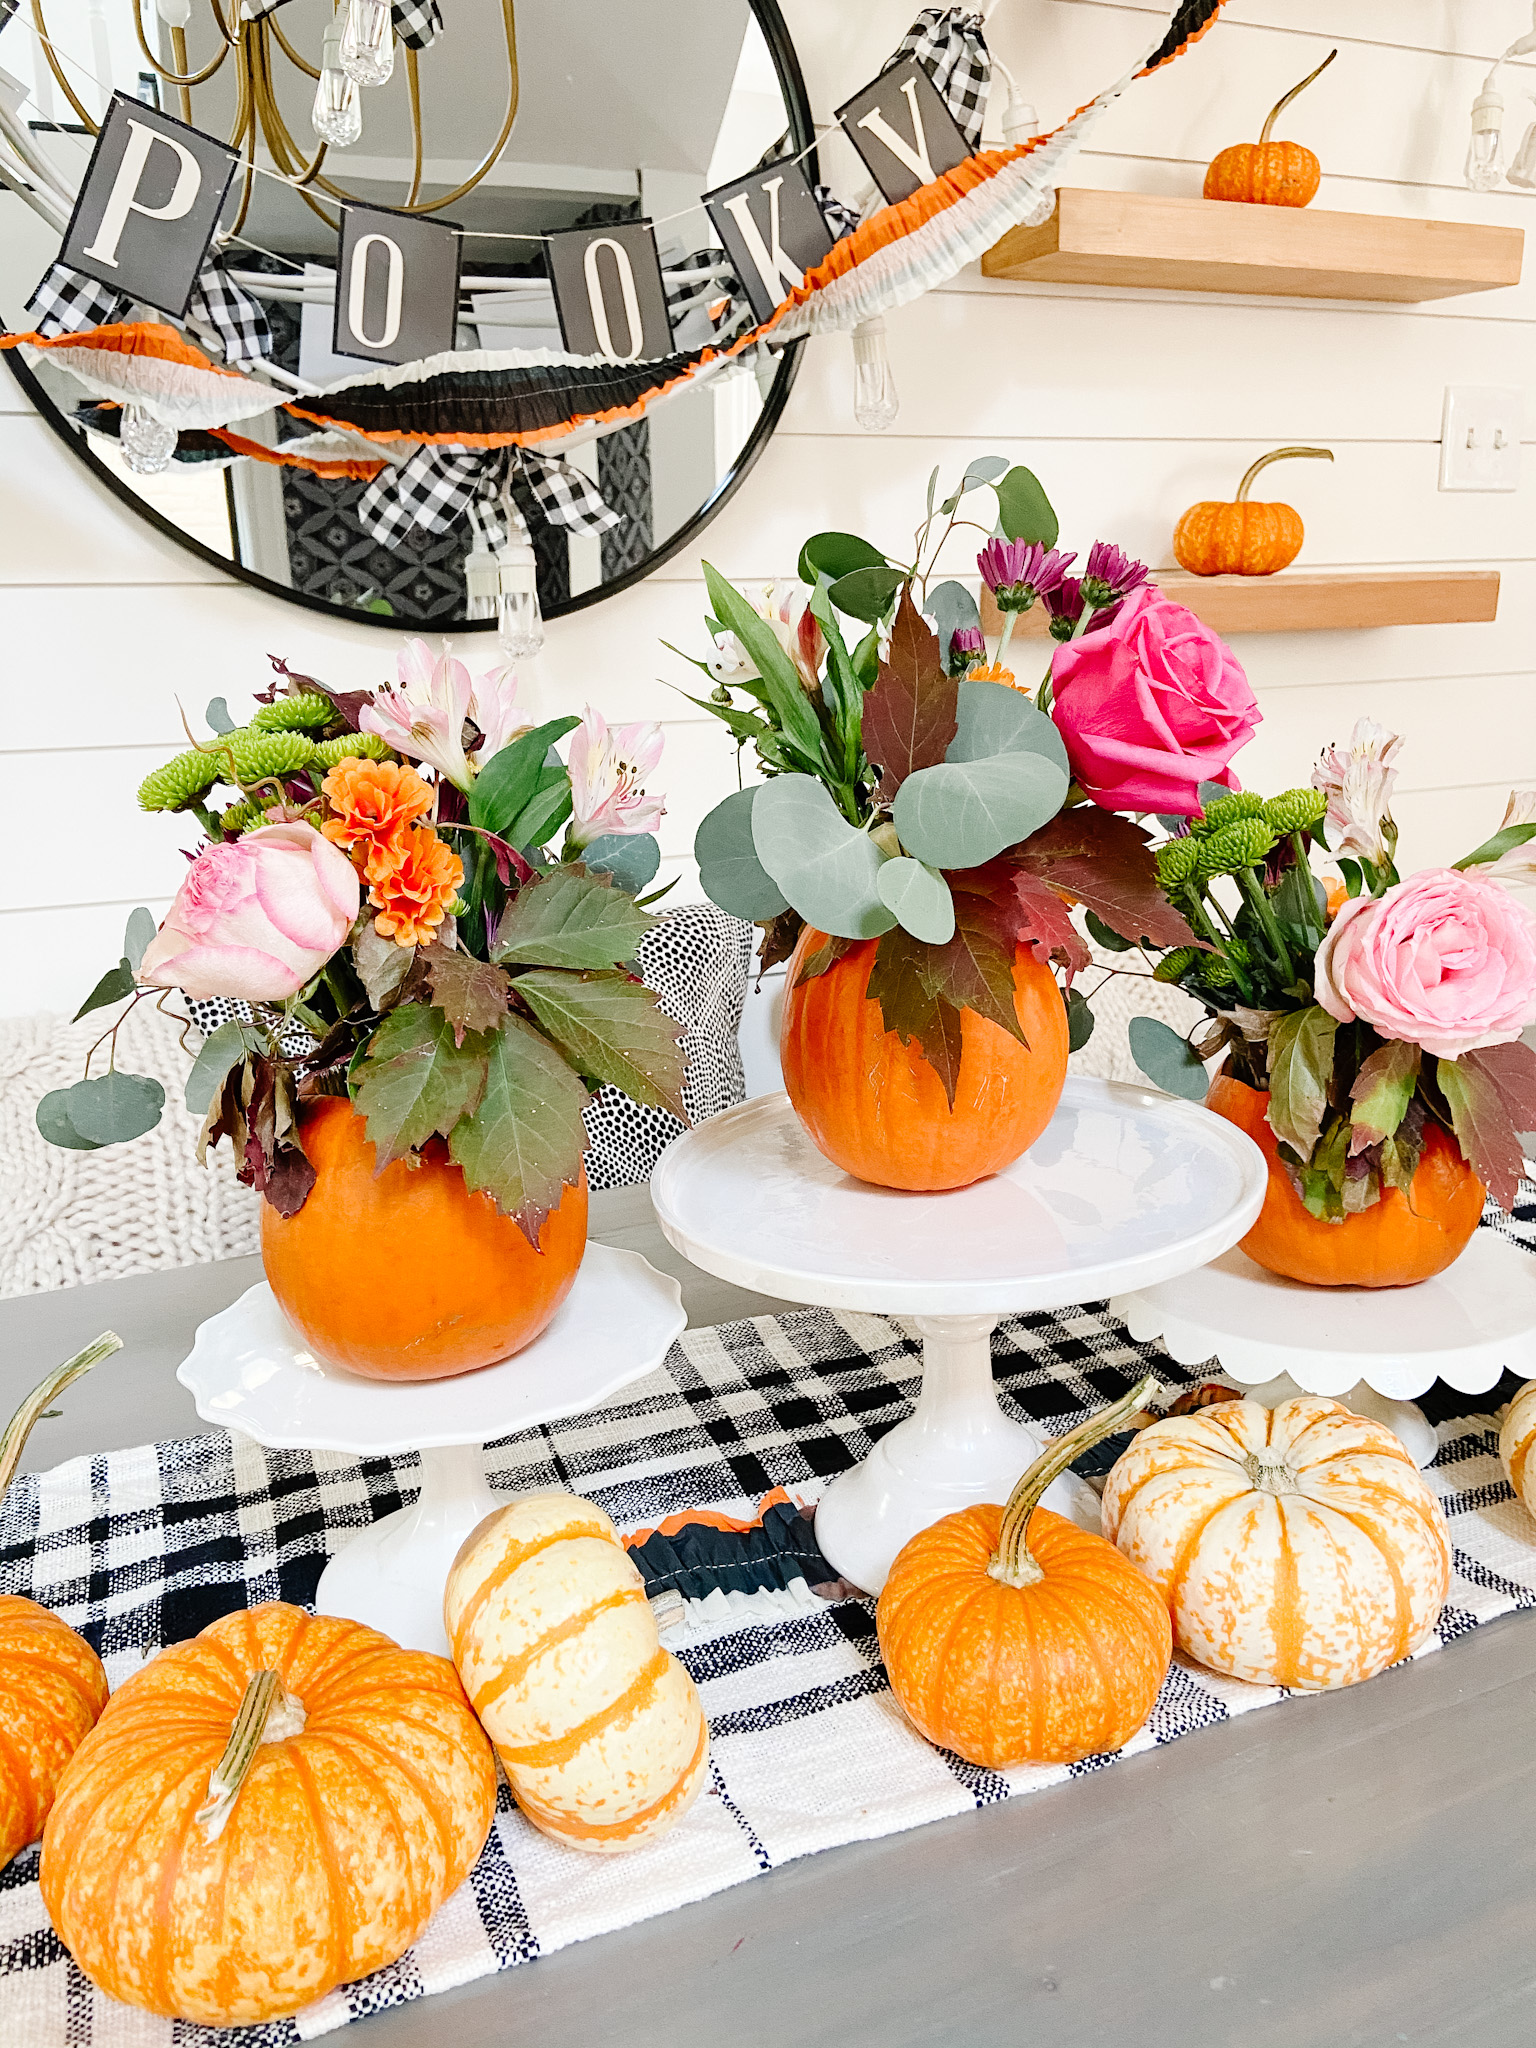 Mini Pumpkin Flower Arrangement Centerpieces. Care small pumpkins and display cut flowers for an festive fall centerpiece.